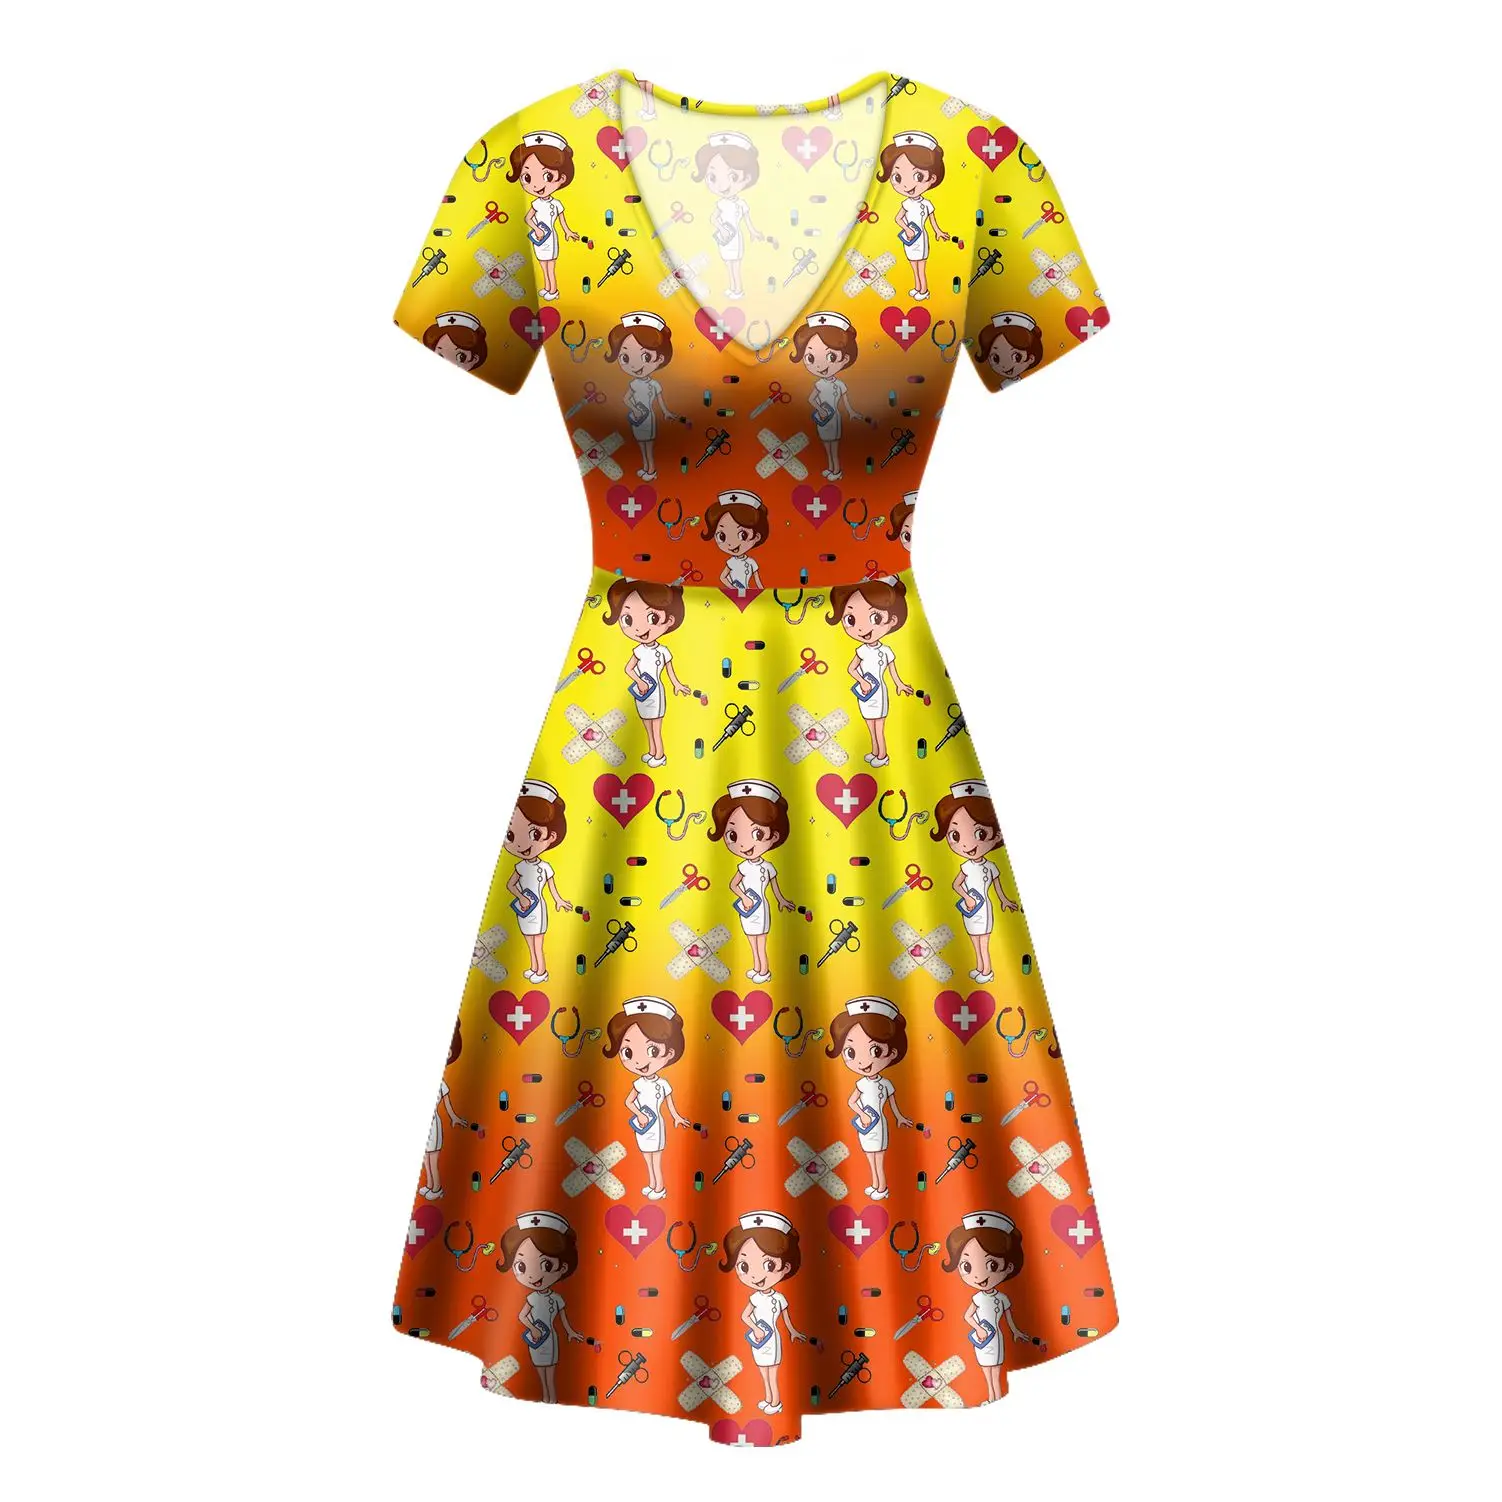 Buy > cute dresses women > in stock